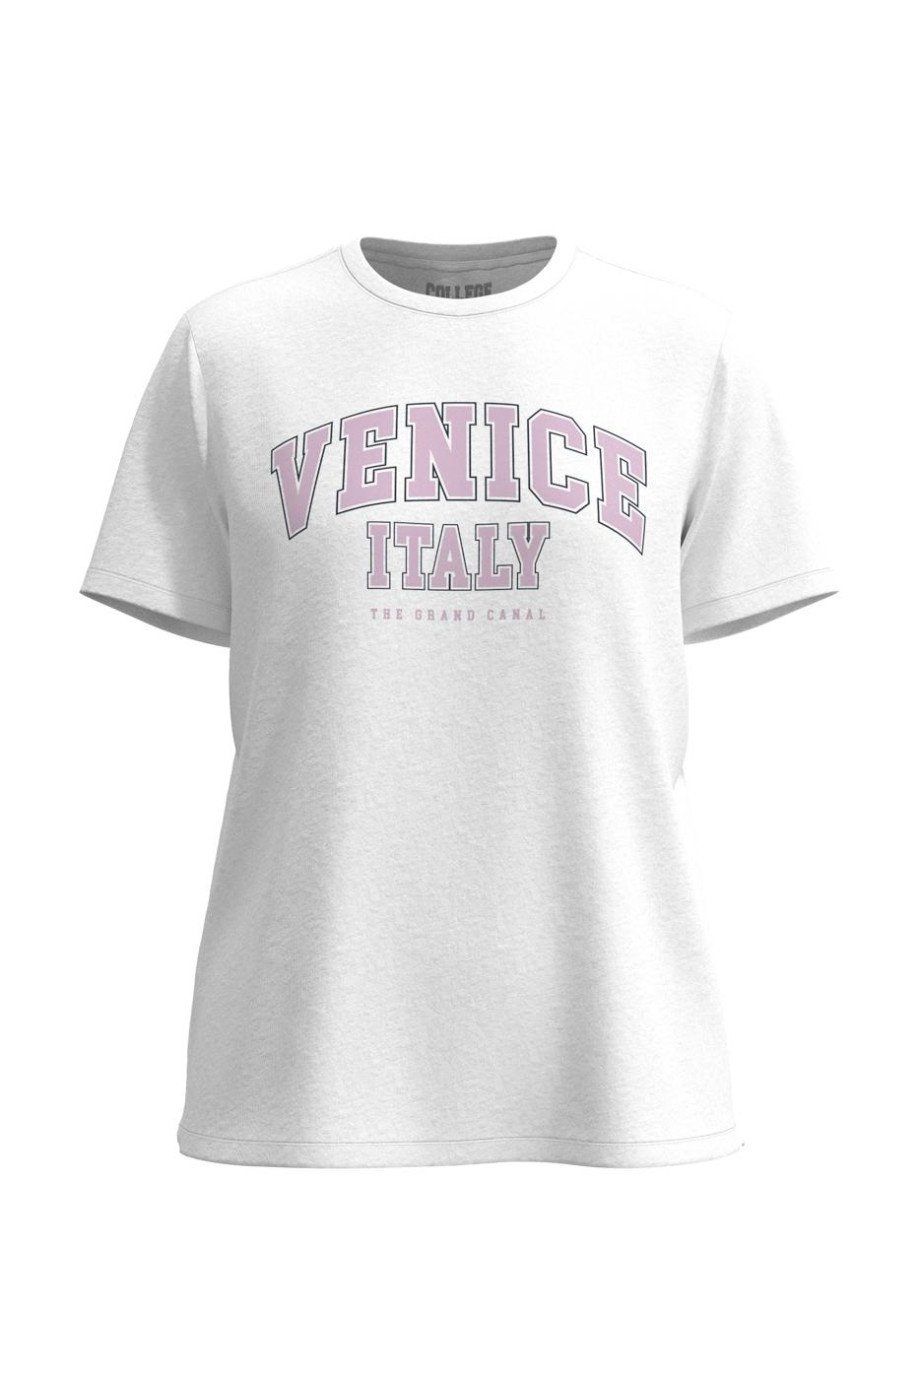 Camiseta cuello redondo unicolor con diseño college de Venecia